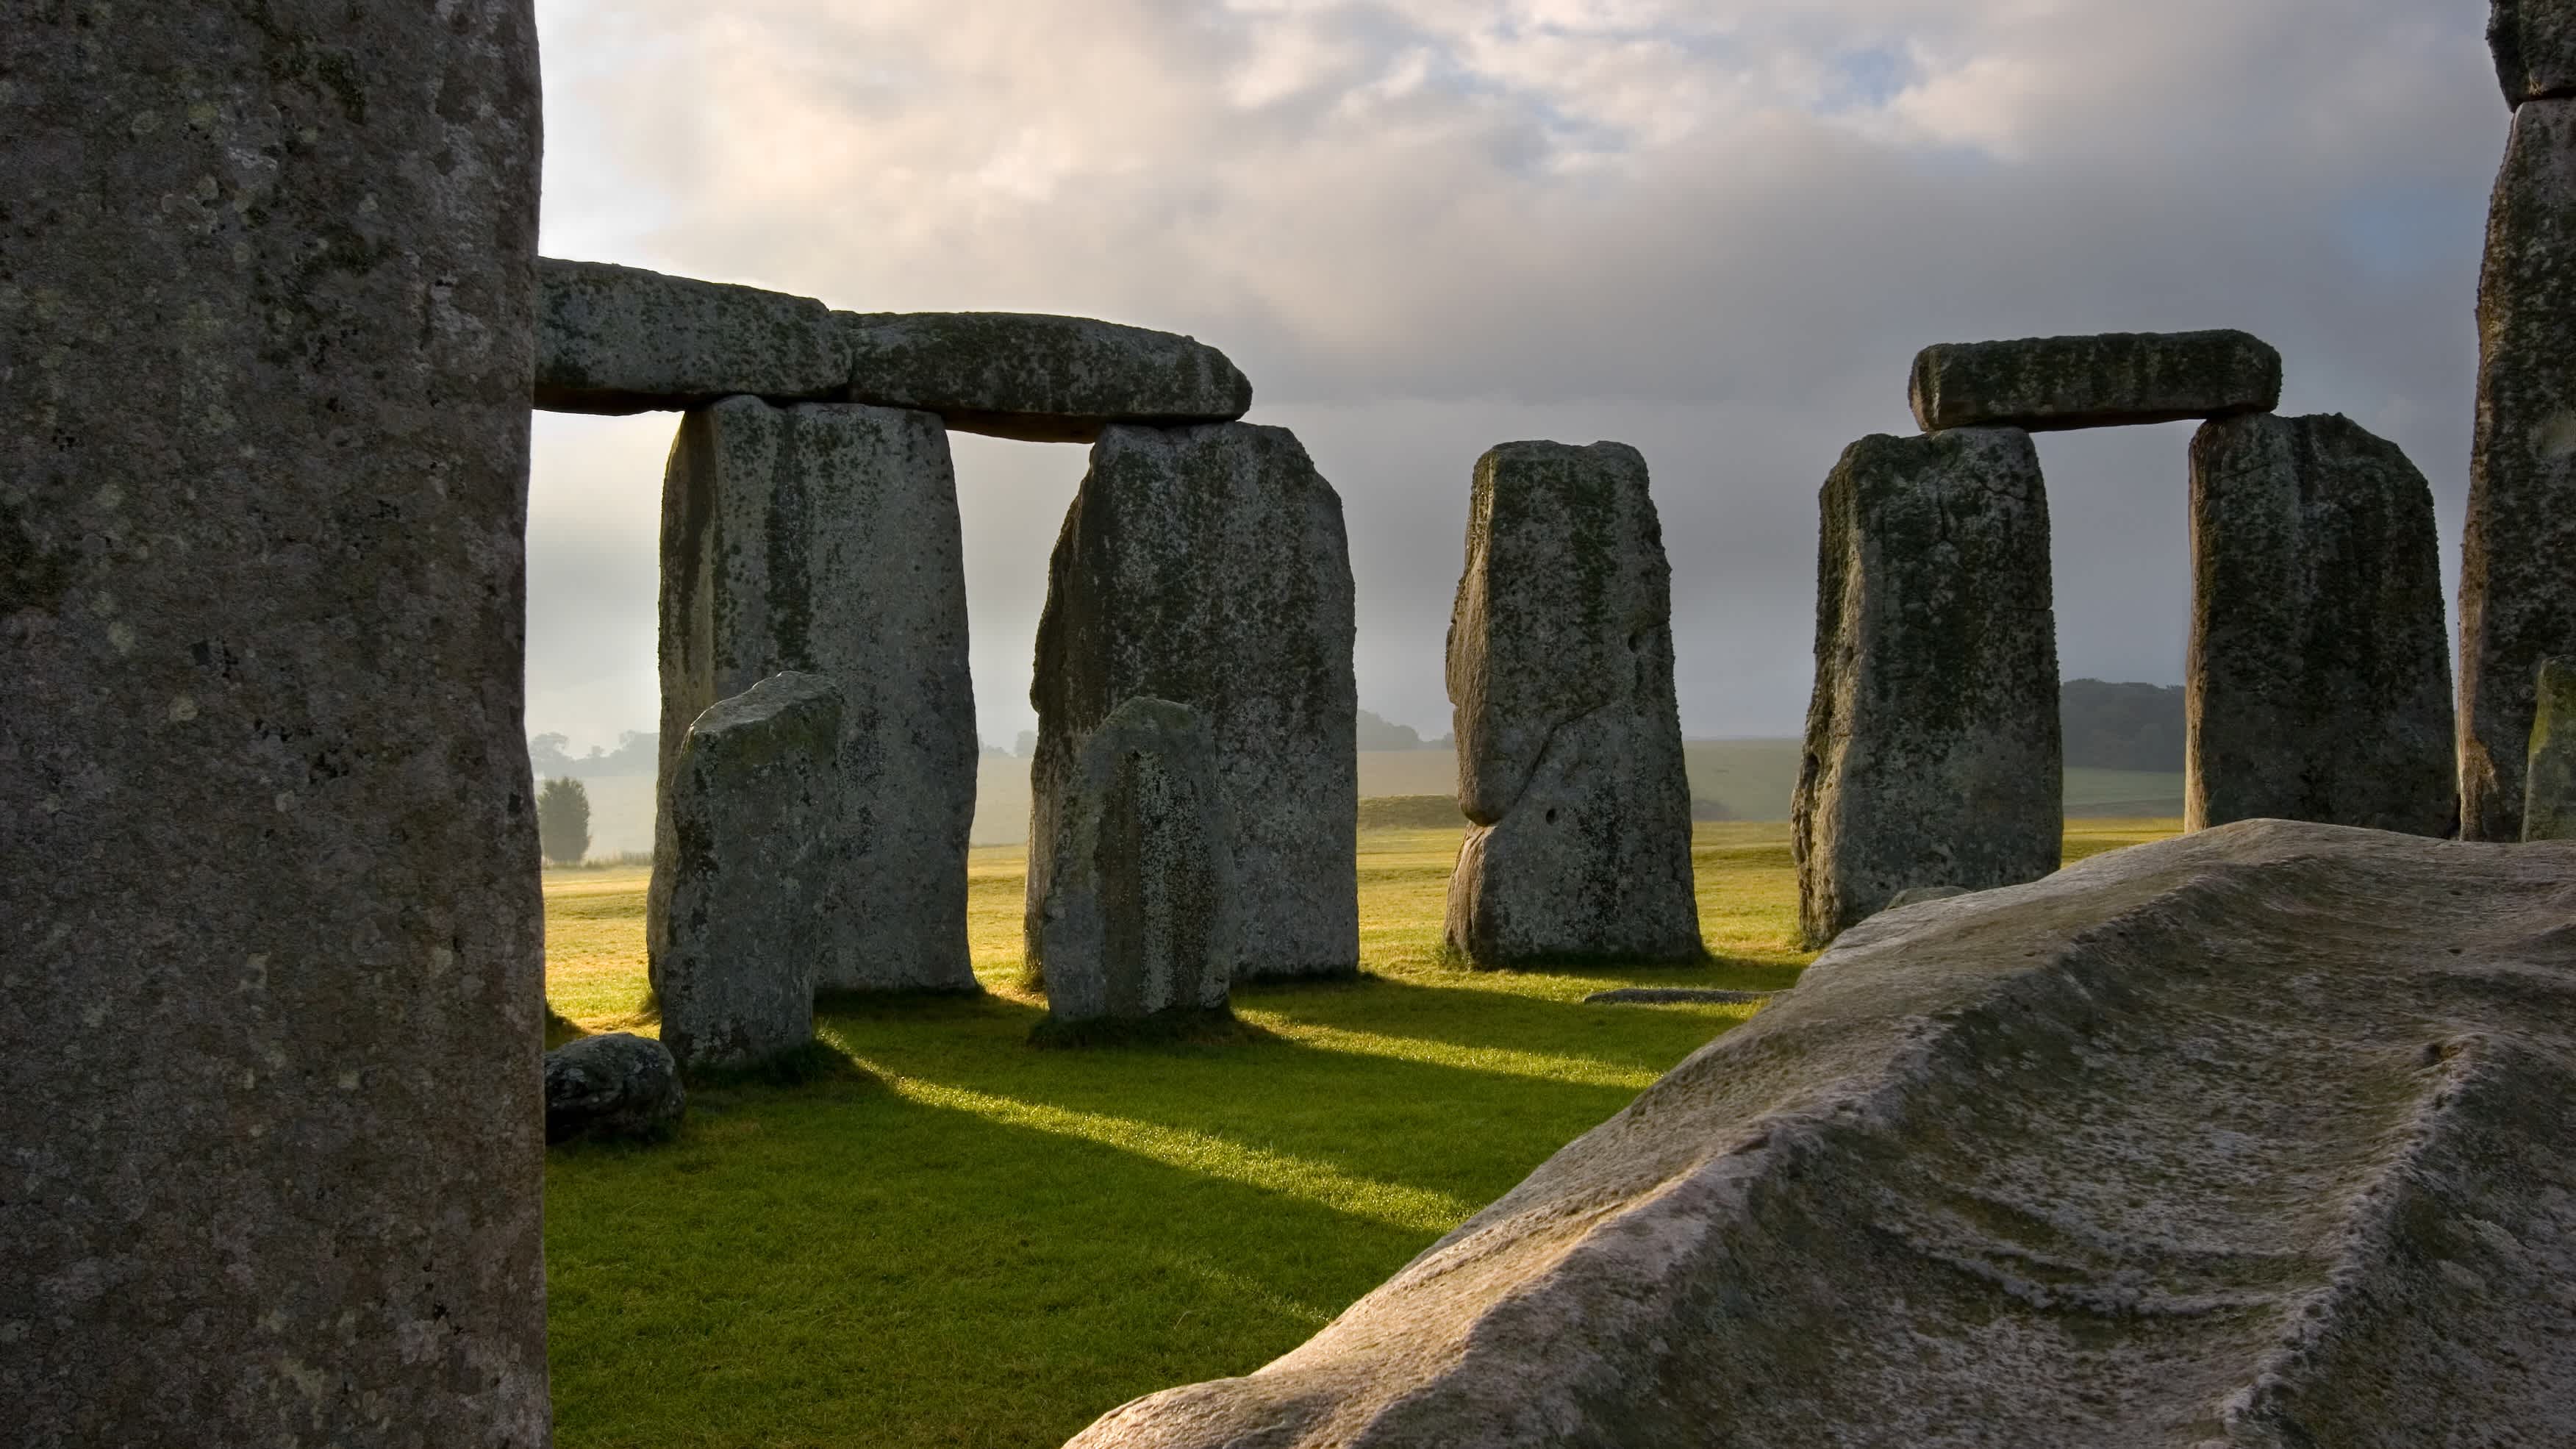 Le soleil se lève et projette ses rayons à travers les pierres massives sculptées à la main de Stonehenge, érigé il y a des milliers d'années dans la plaine de Salisbury. Angleterre, Royaume-Uni.